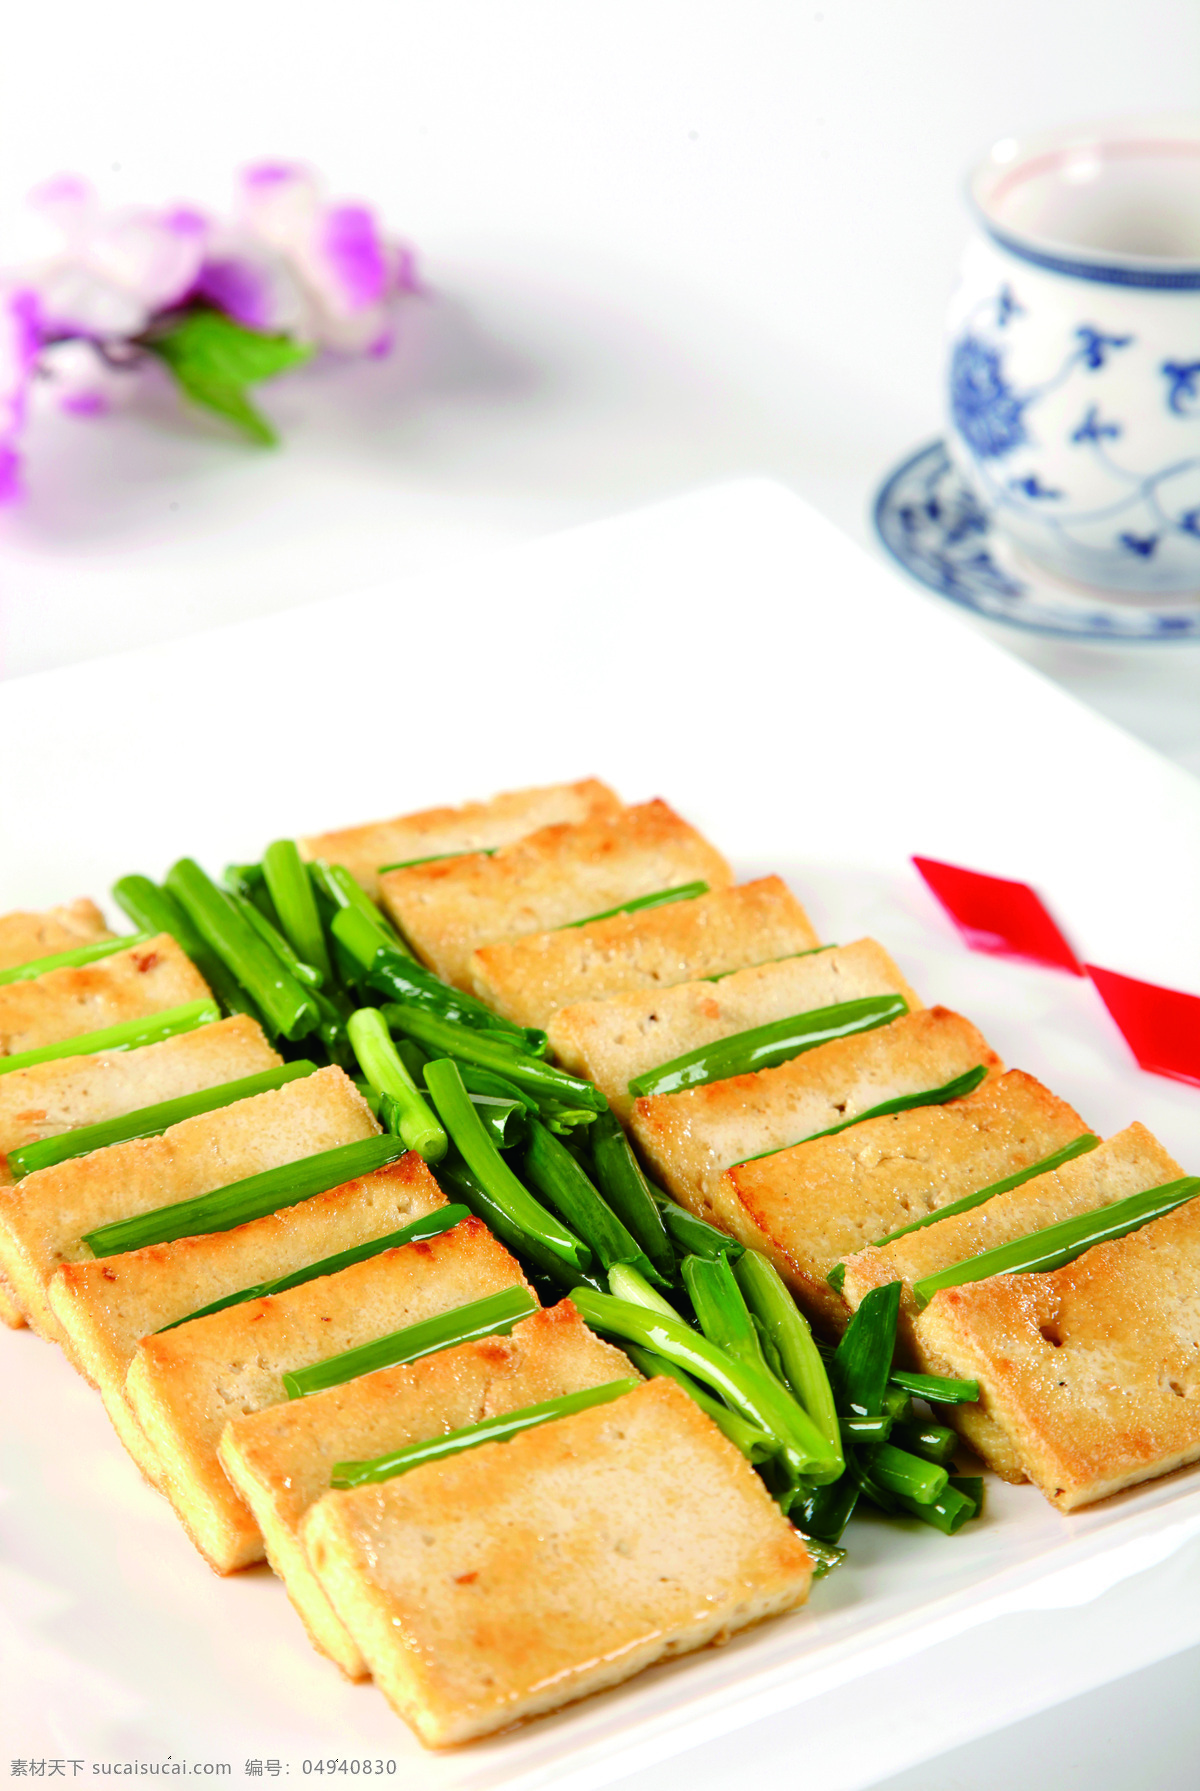 香葱煎豆腐 葱煎豆腐 香葱 煎豆腐 豆腐 美食 高清菜谱用图 餐饮美食 传统美食